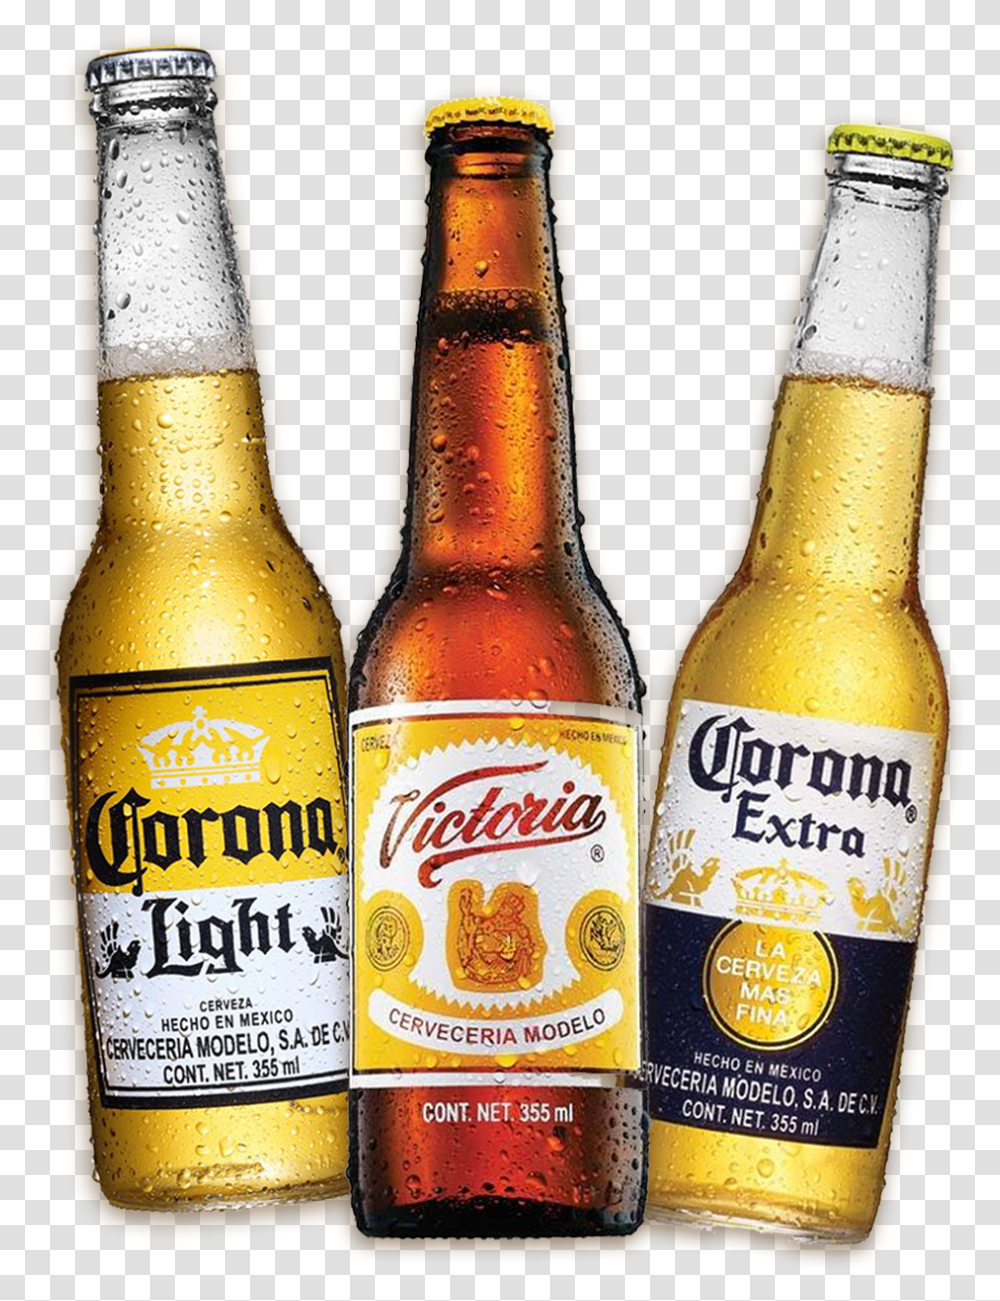 Corona Extra Light Cervezas, Beer, Alcohol, Beverage, Drink Transparent Png